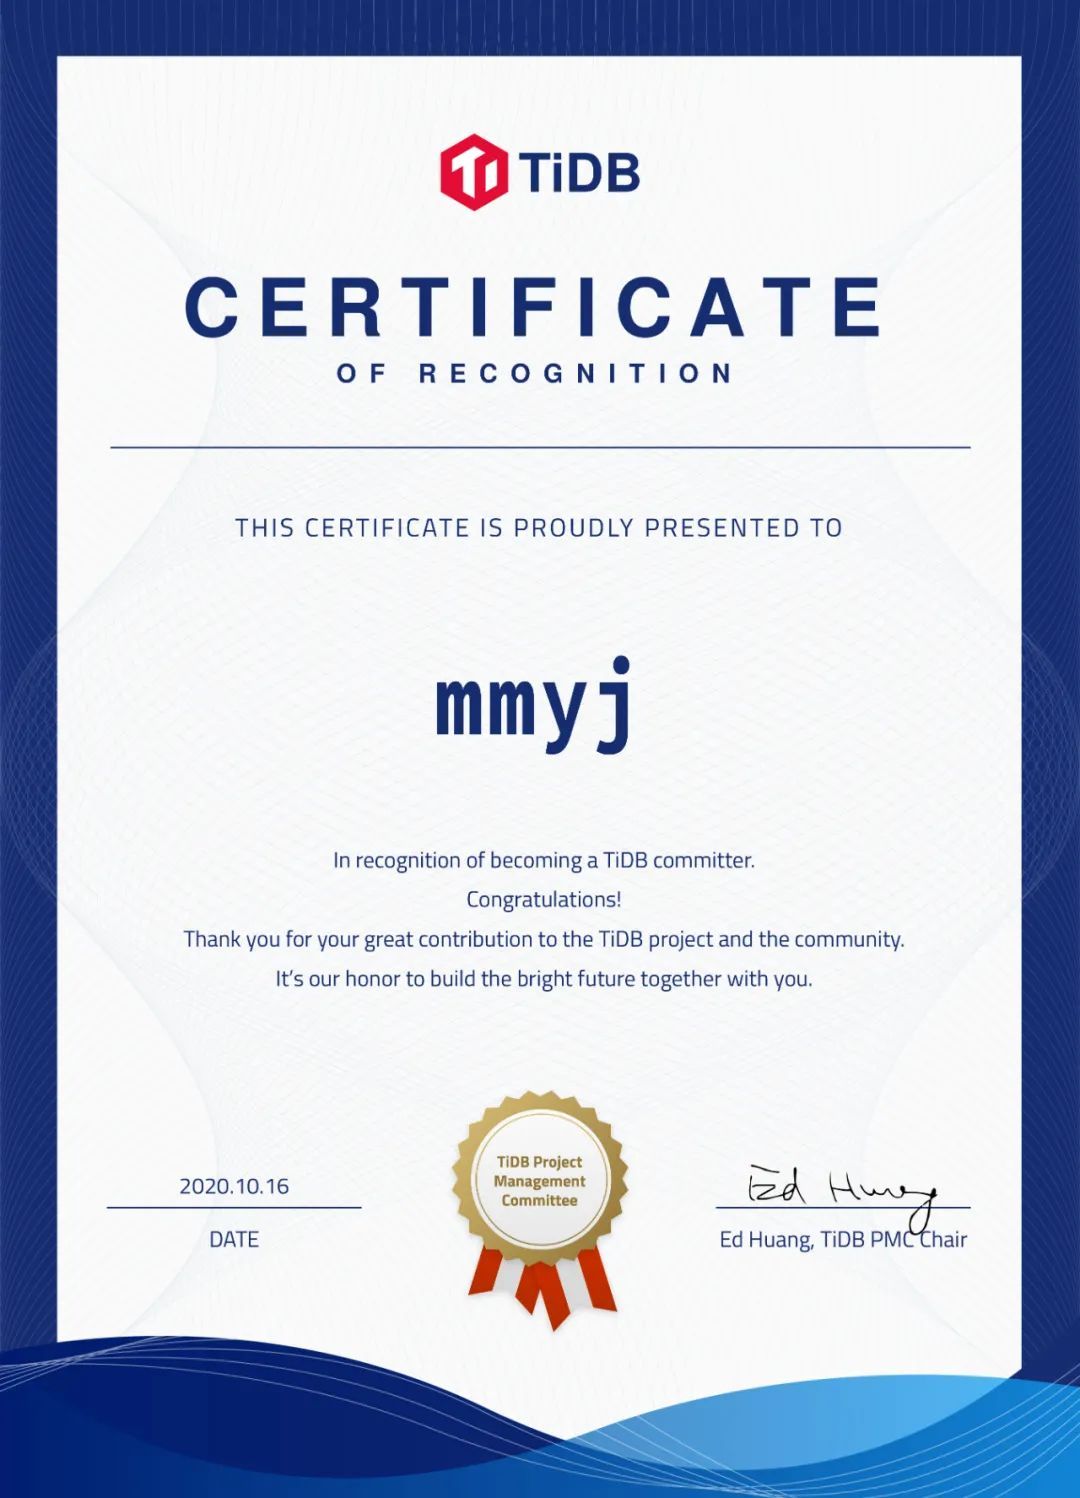 1-certificate